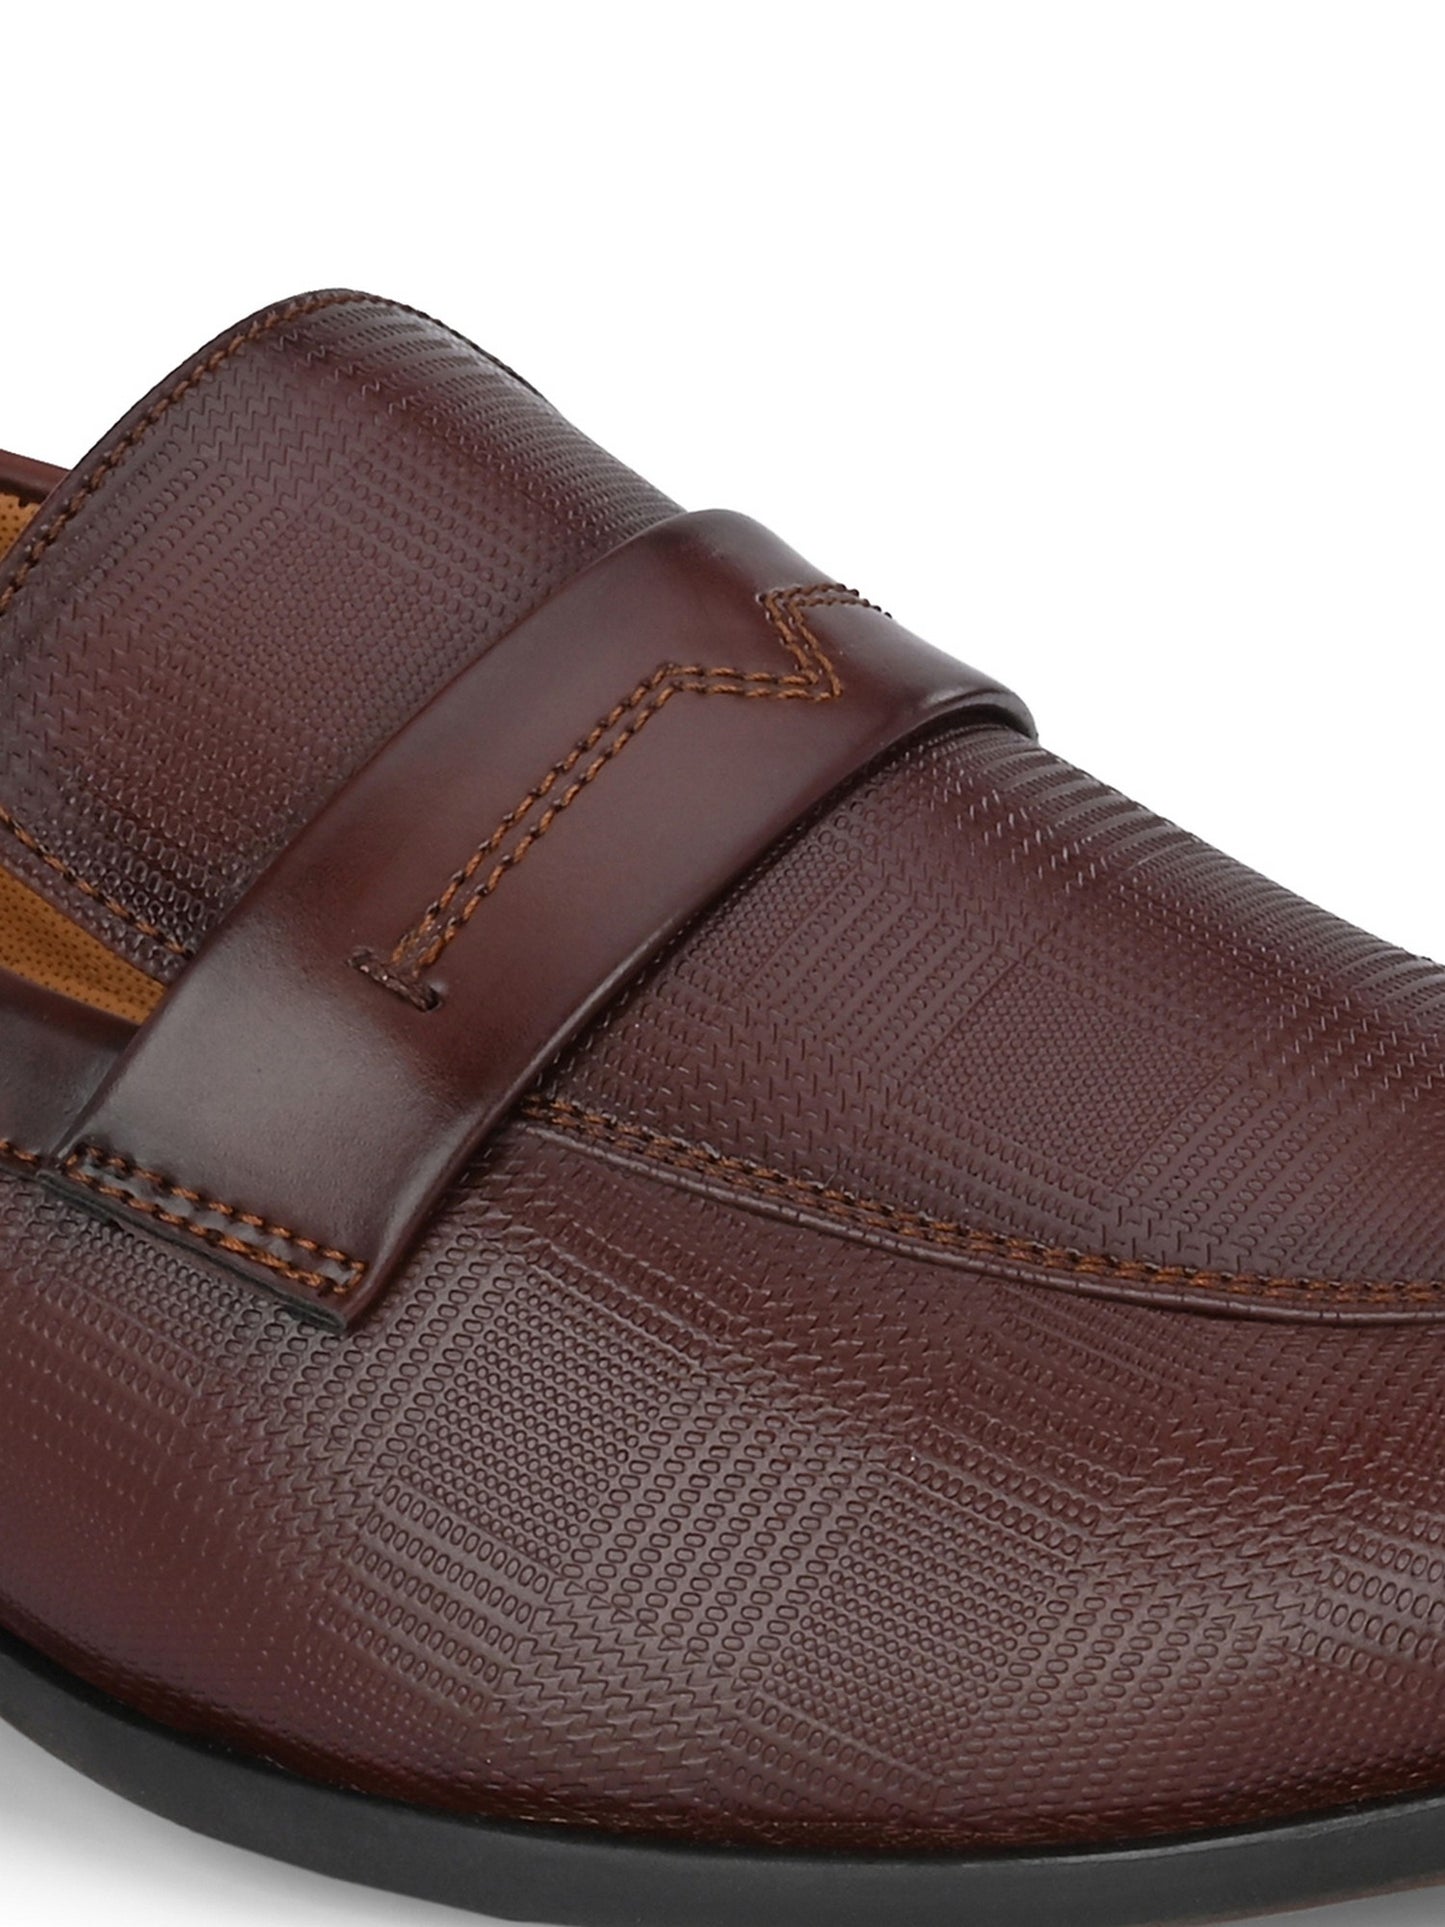 Guava Men's Brown Slip On Semi Formal Shoes (GV15JA812)